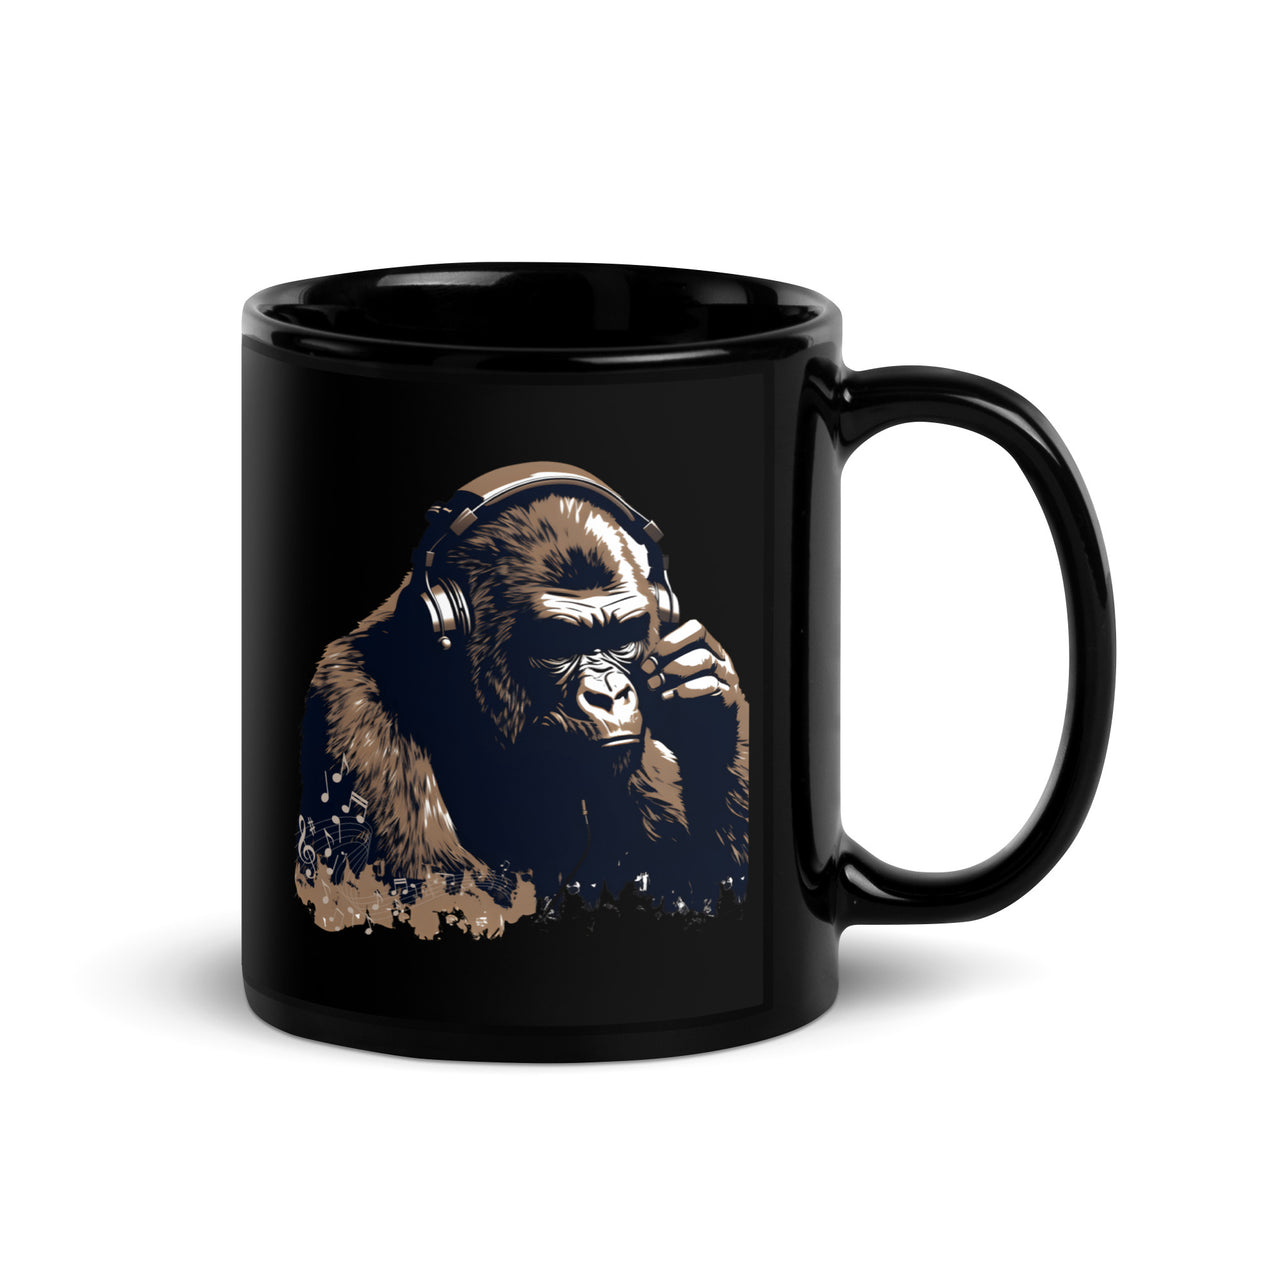 Gorilla Grooves: The Art of Musical Zen Black Mug